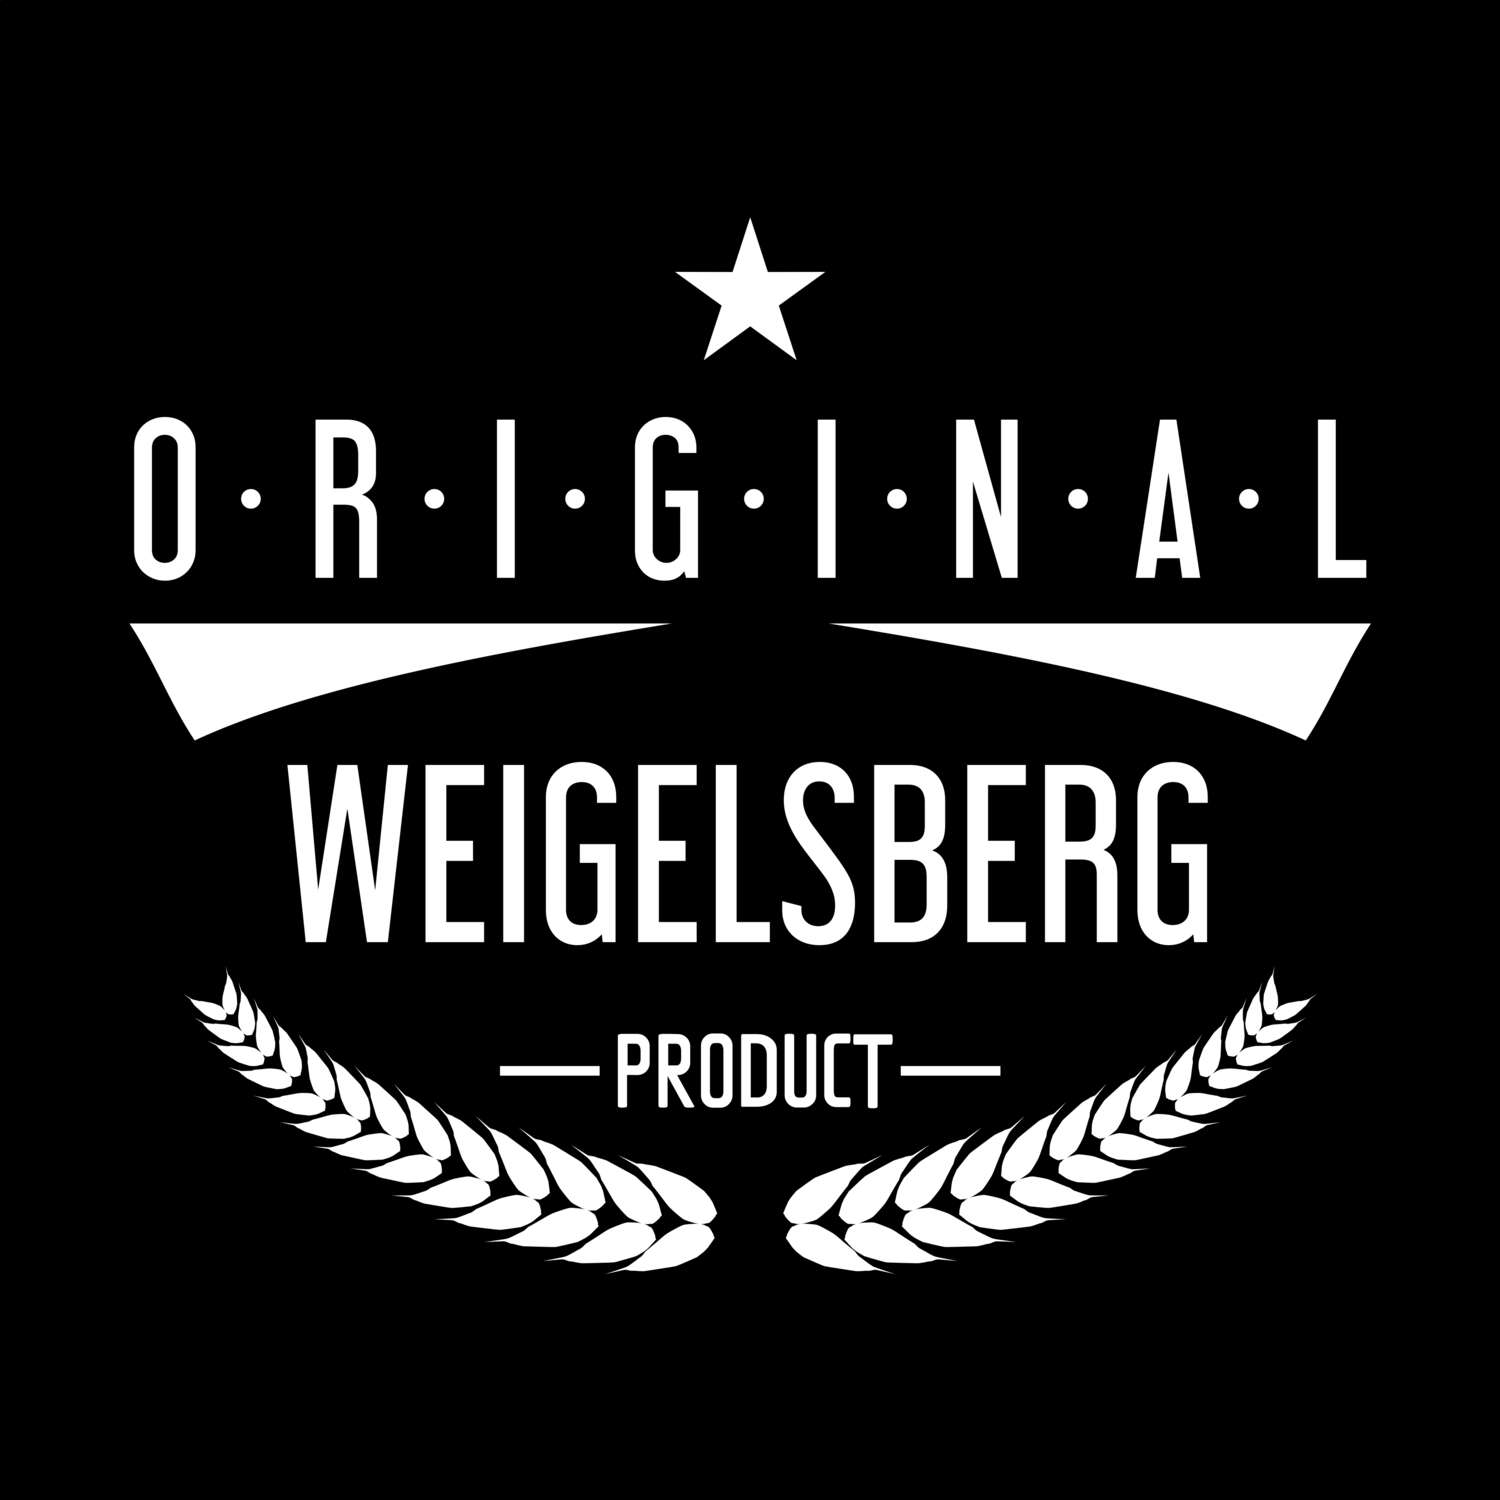 Weigelsberg T-Shirt »Original Product«